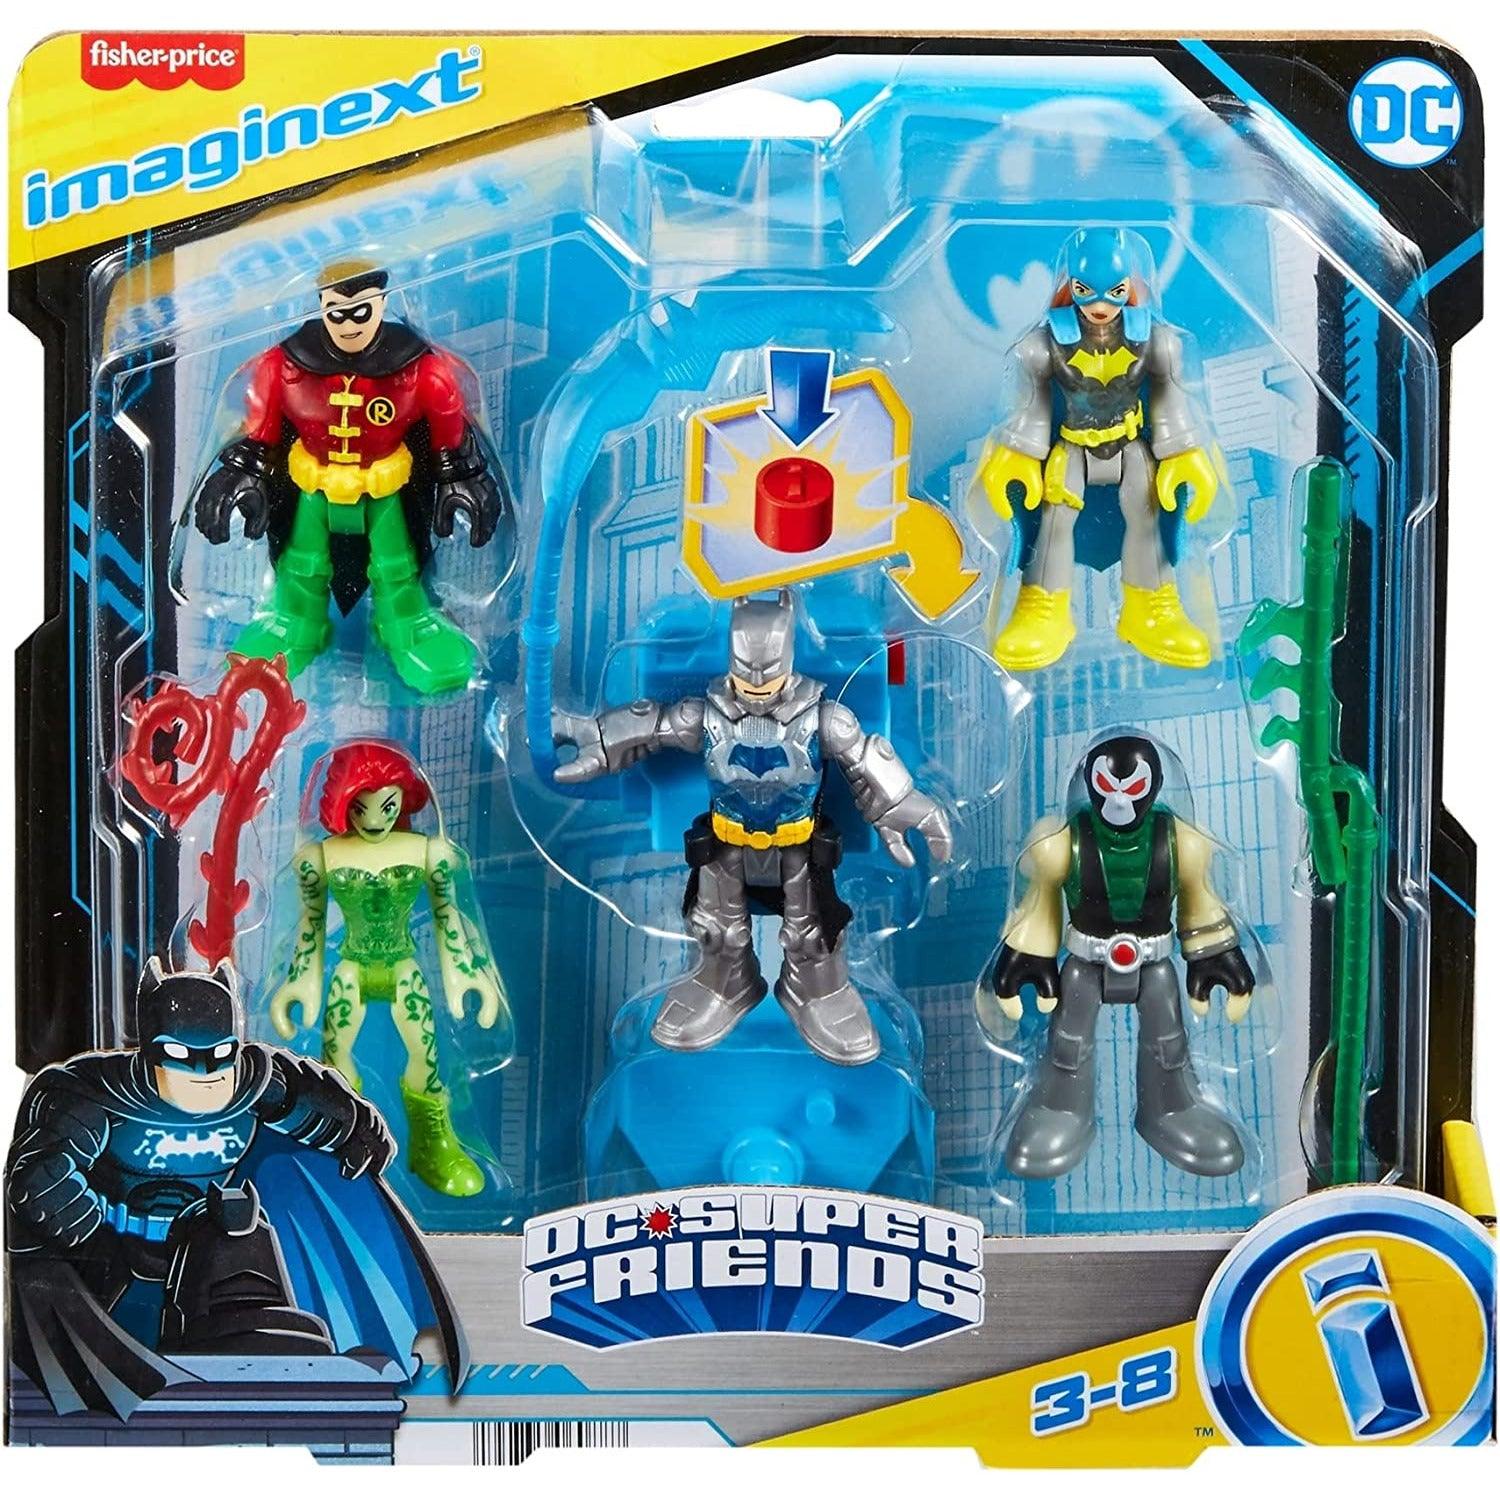 Imaginext DC Super Friends Batman Toys, Batman Battle Multipack, 9-Piece Figure Set with Light-Up for Pretend Play